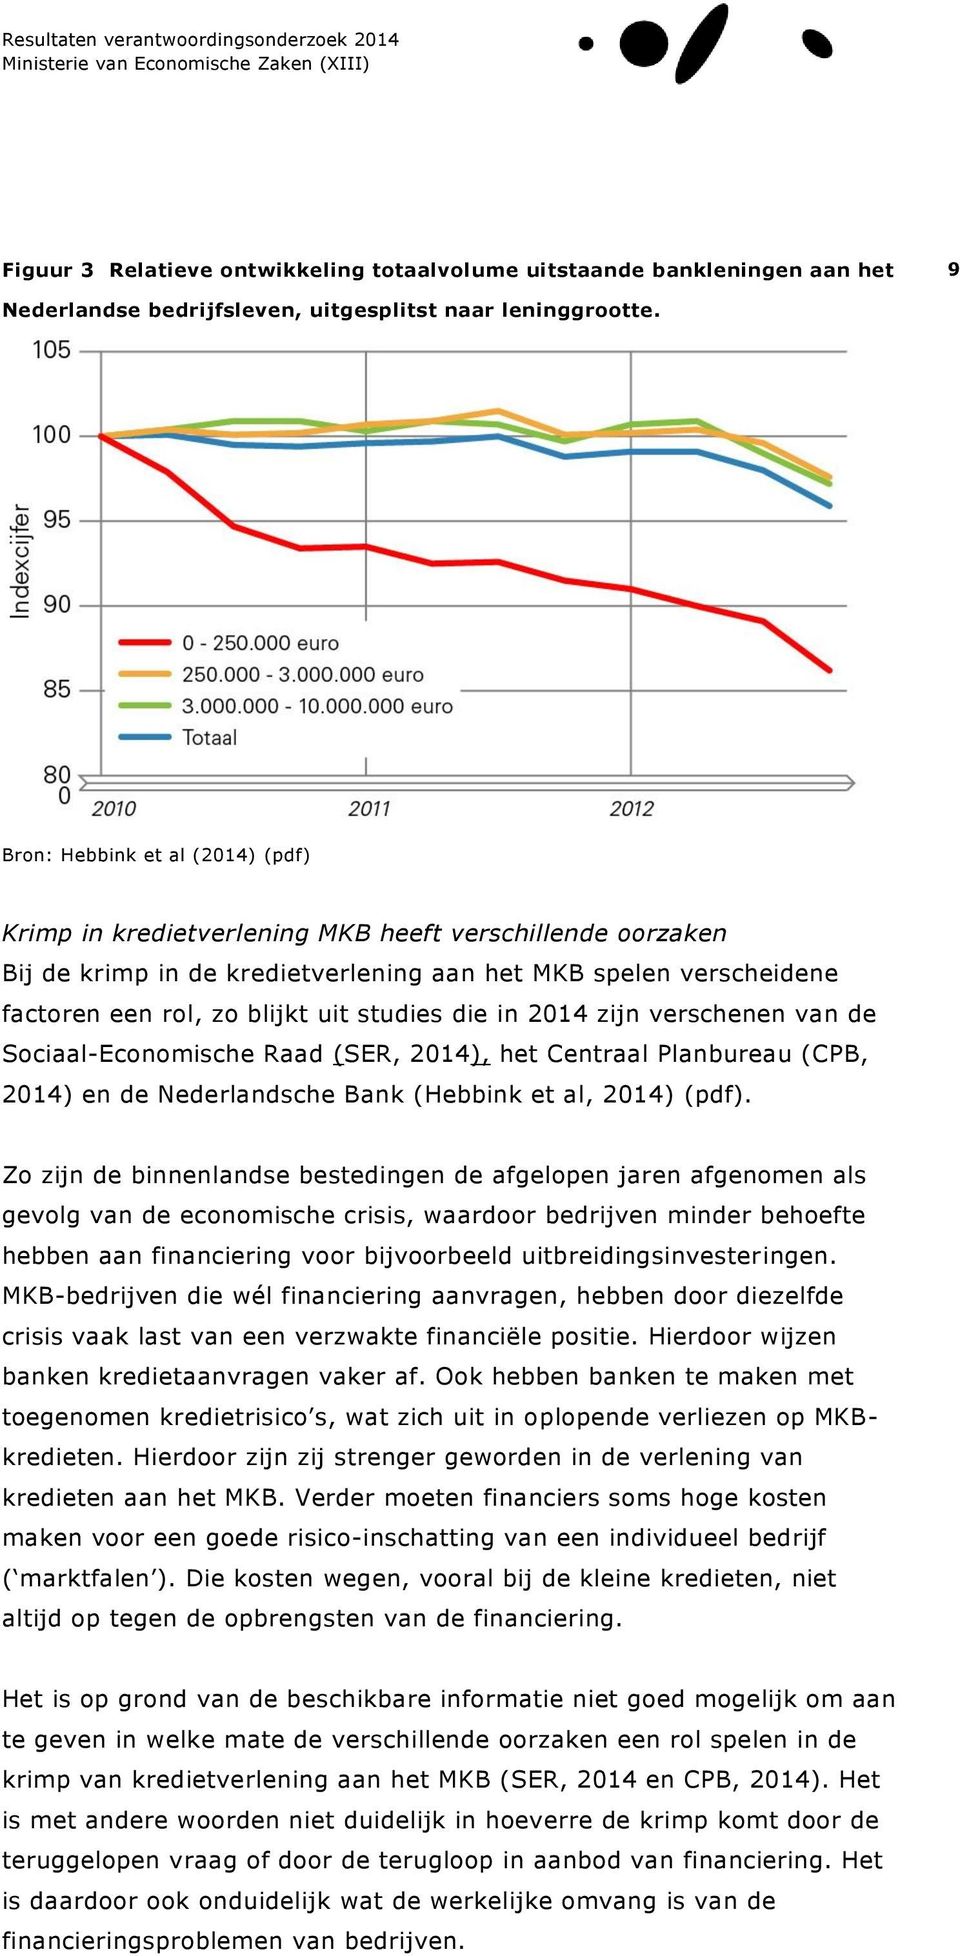 die in 2014 zijn verschenen van de Sociaal-Economische Raad (SER, 2014), het Centraal Planbureau (CPB, 2014) en de Nederlandsche Bank (Hebbink et al, 2014) (pdf).